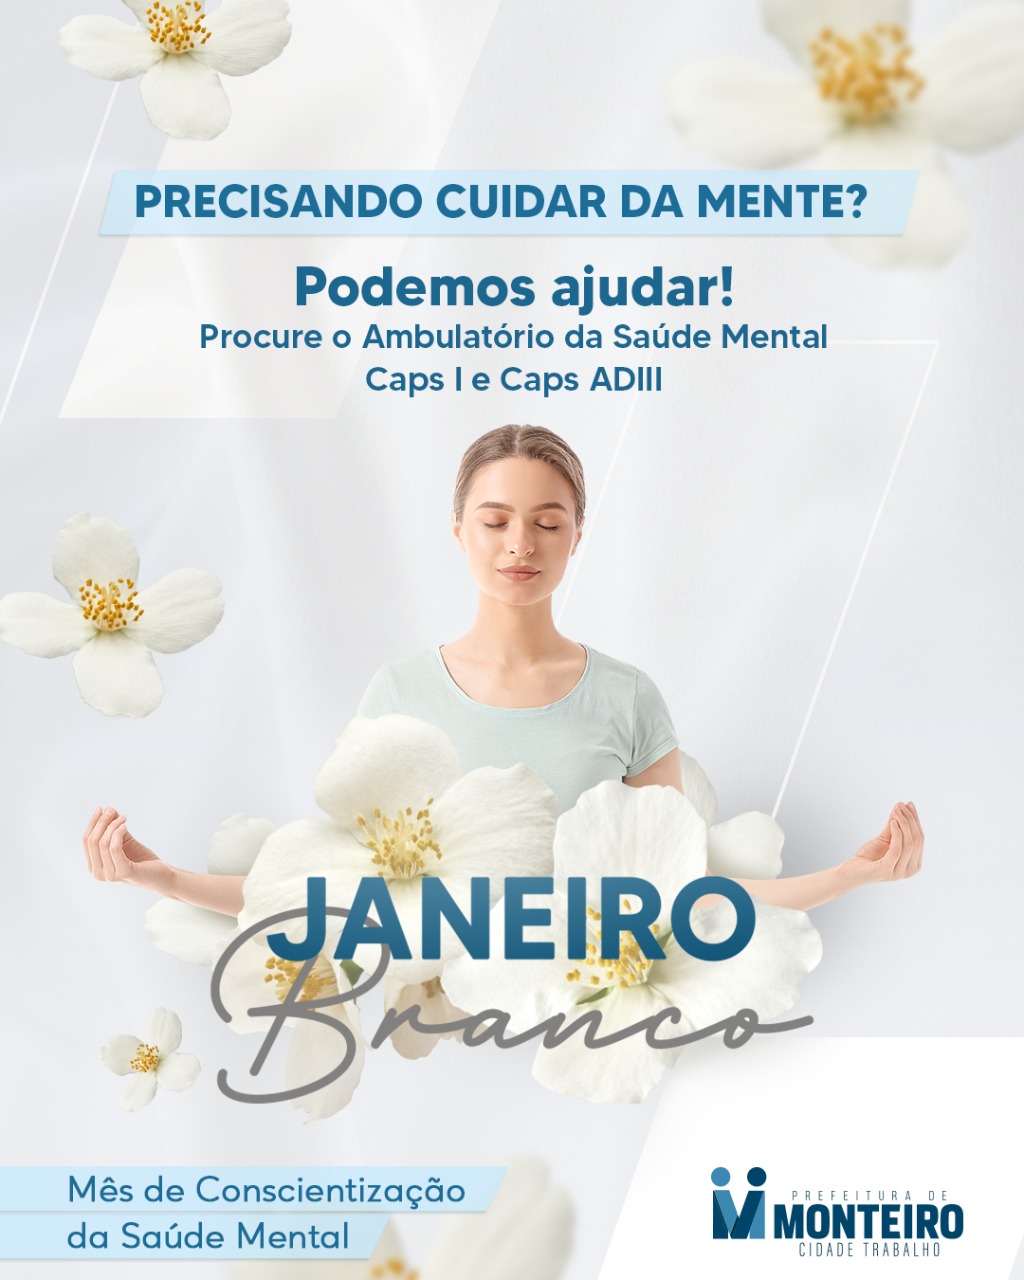 Janeiro A vida pede equilíbrio: Janeiro Branco terá vasta programação em Monteiro